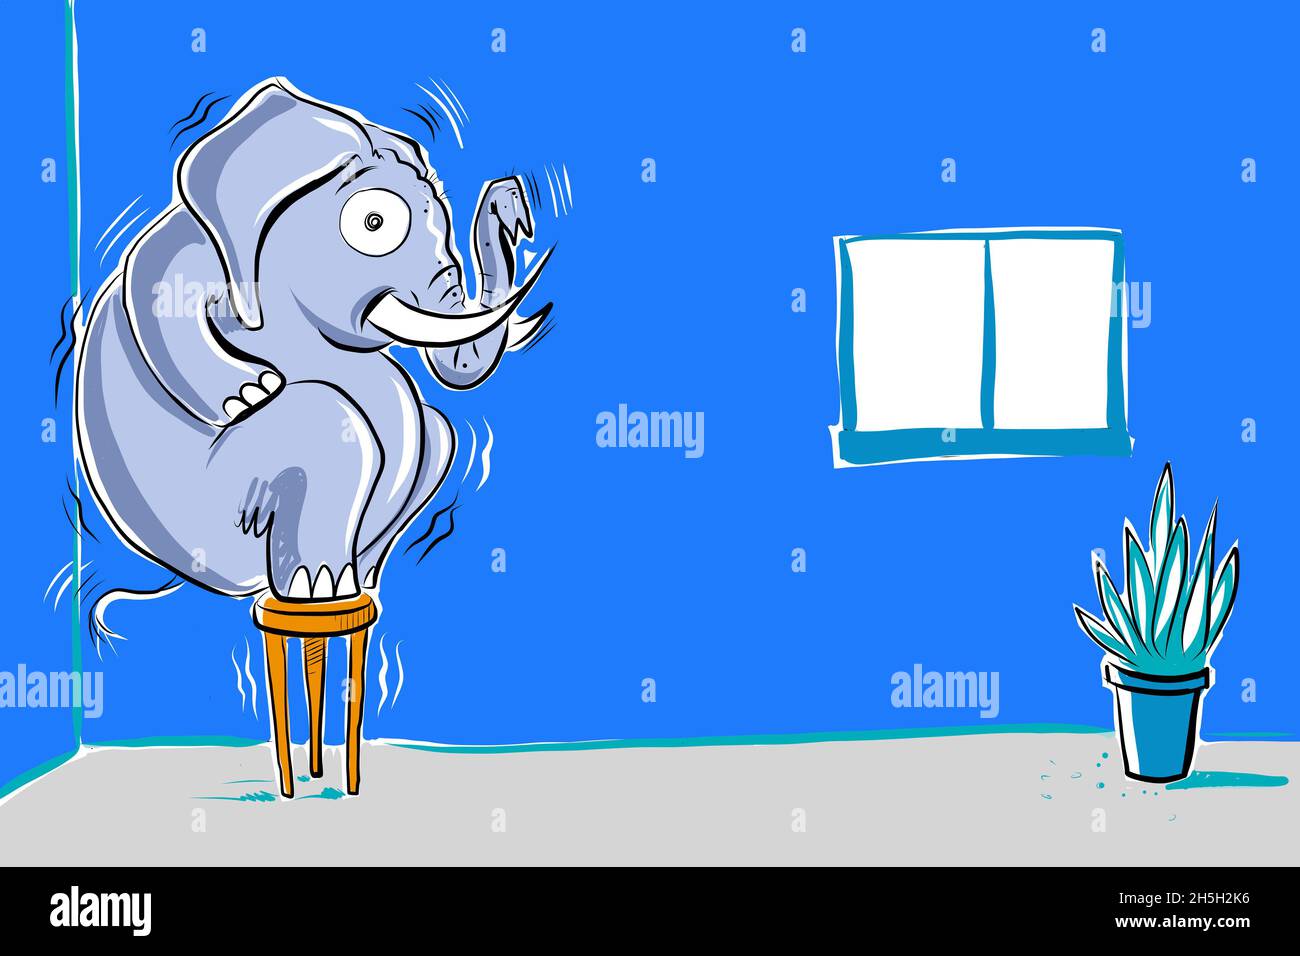 La classica metafora di un elefante in camera in stile fumettistico Foto Stock